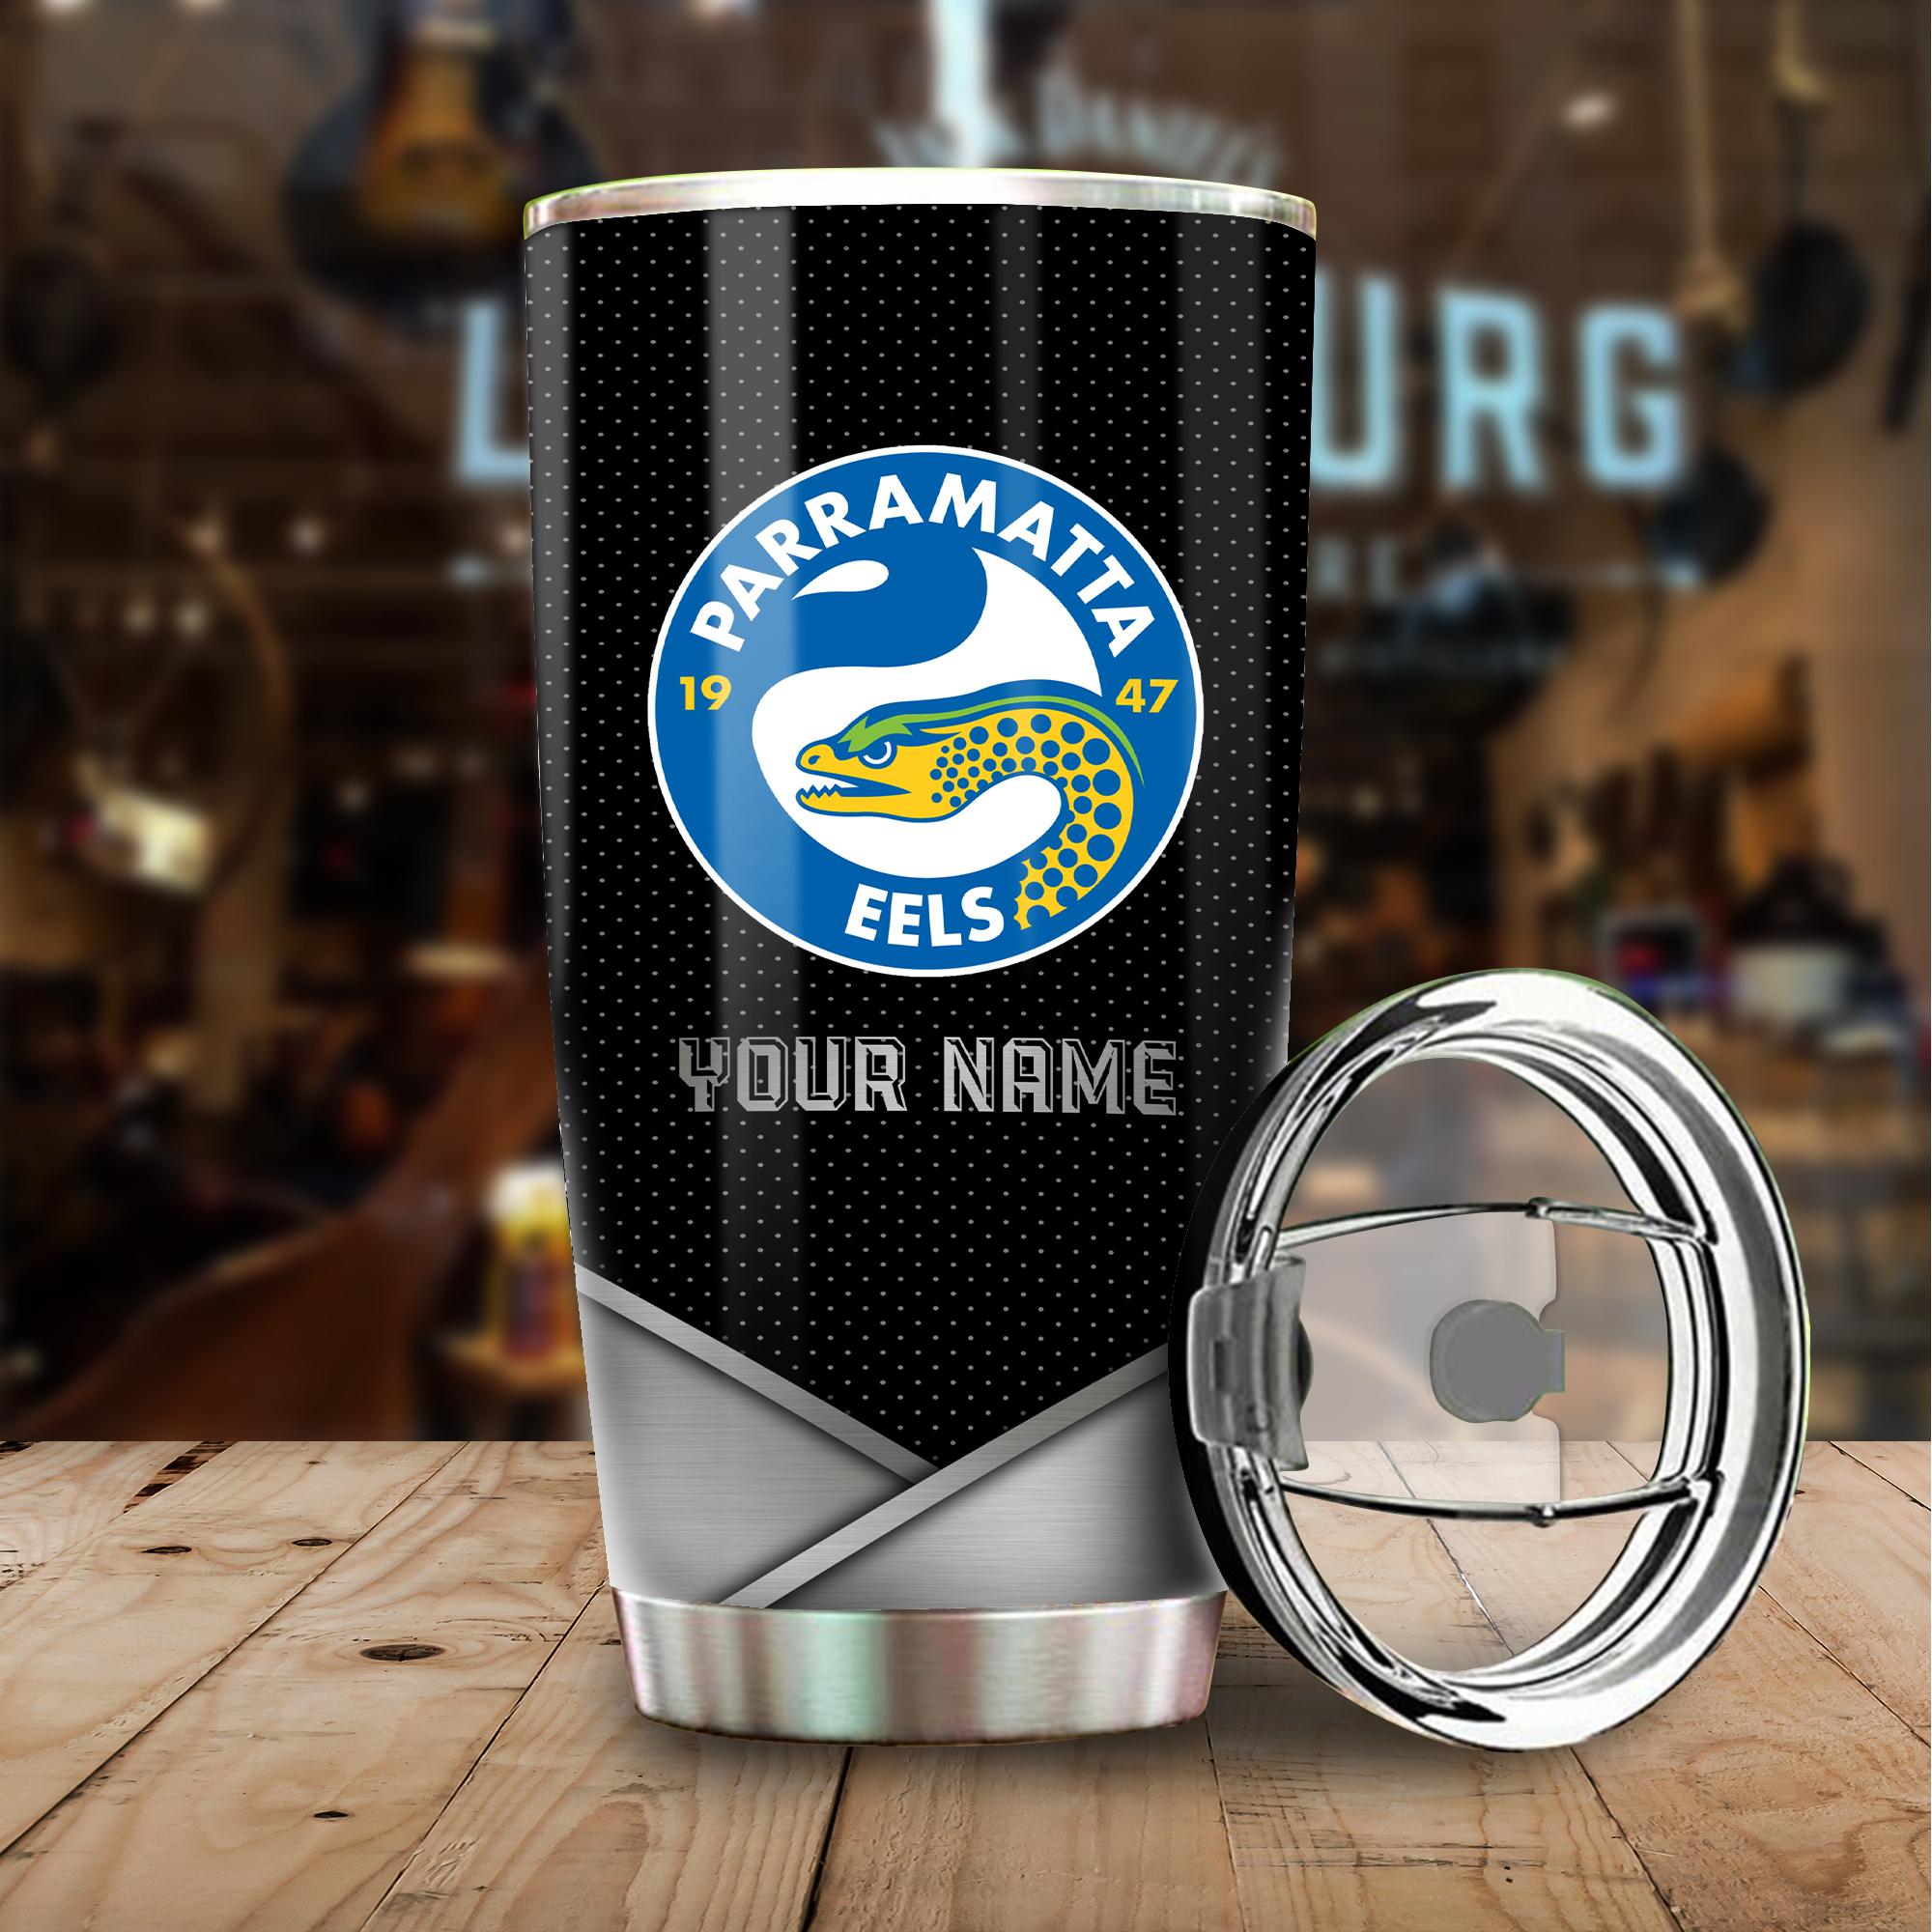 Parramatta Eels I’m A Grumpy Old Man Custom Name Tumbler Cup